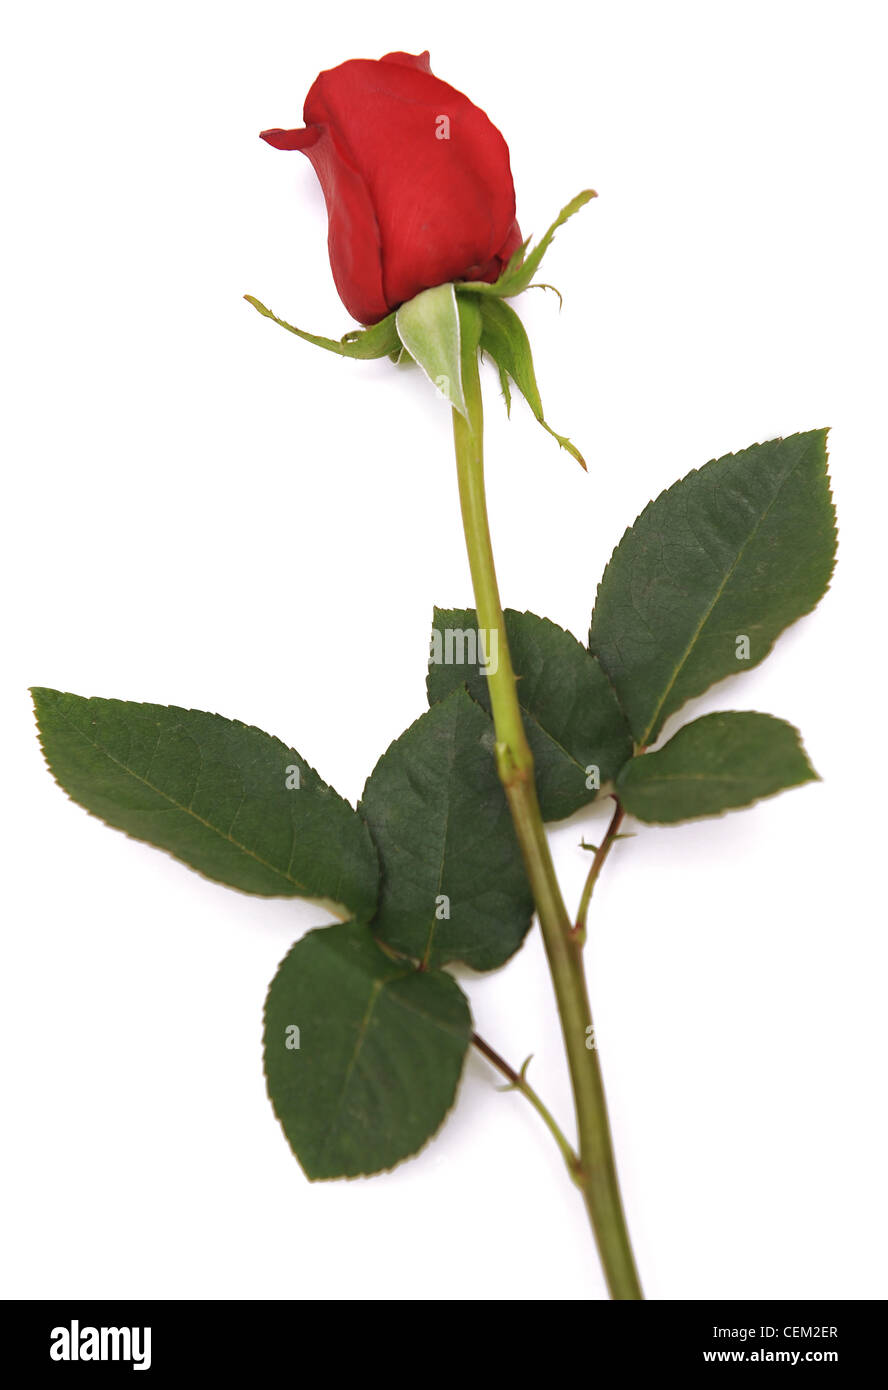 Ancora un immagine di vita di una rosa rossa con gambo lungo e foglie su  sfondo bianco Foto stock - Alamy